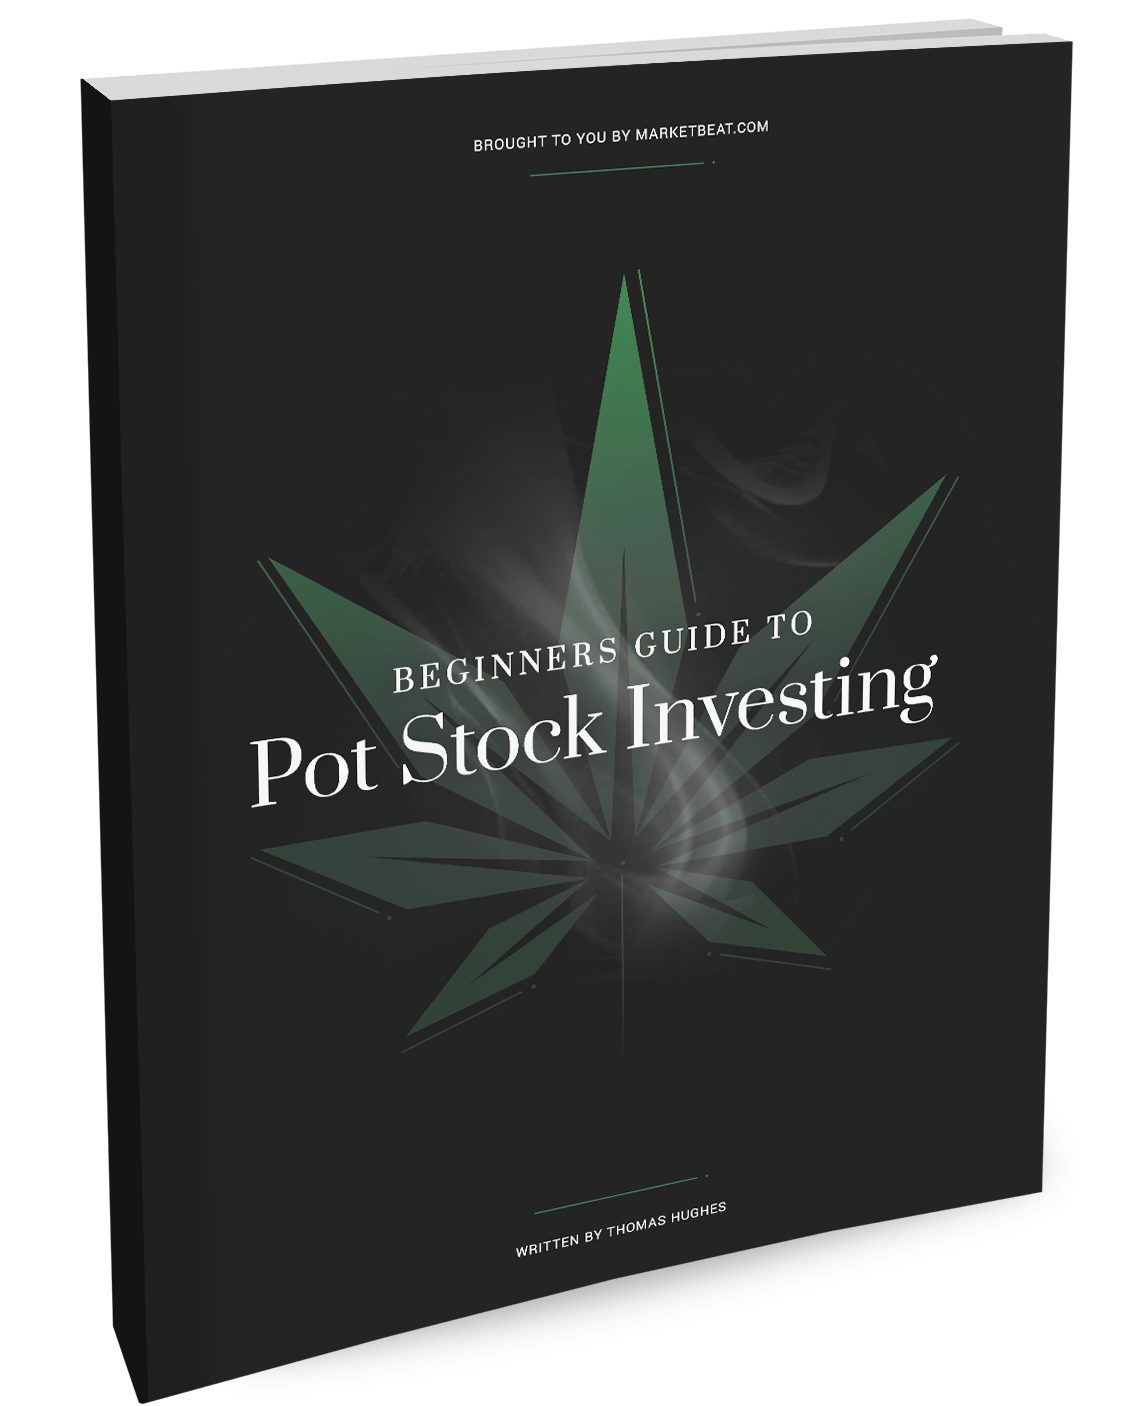 Una guía para principiantes para invertir en acciones de marihuana